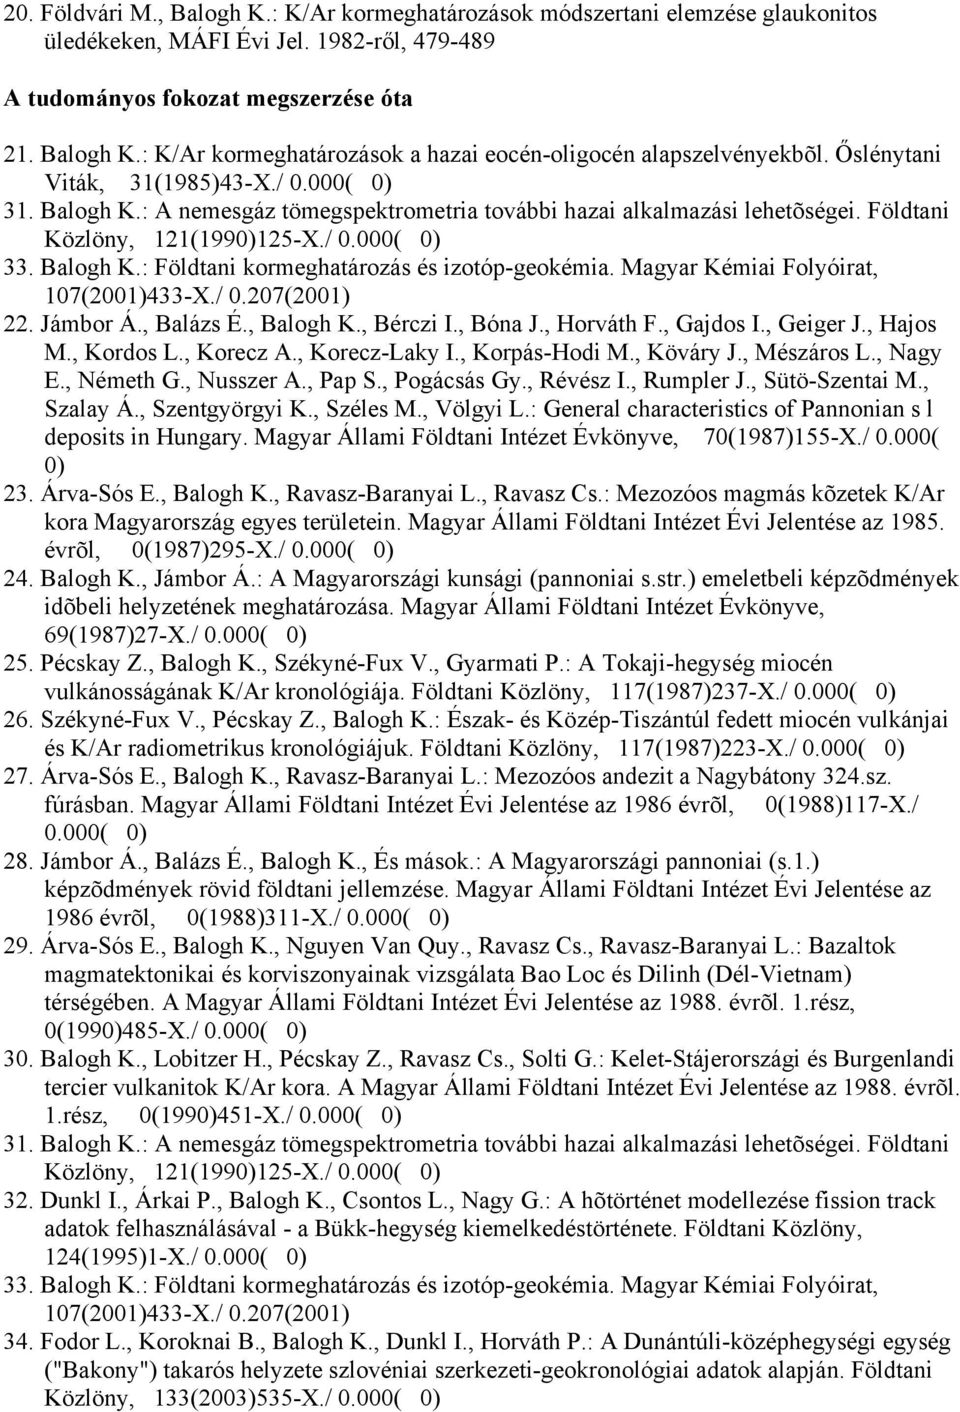 Magyar Kémiai Folyóirat, 107(2001)433-X./ 0.207(2001) 22. Jámbor Á., Balázs É., Balogh K., Bérczi I., Bóna J., Horváth F., Gajdos I., Geiger J., Hajos M., Kordos L., Korecz A., Korecz-Laky I.